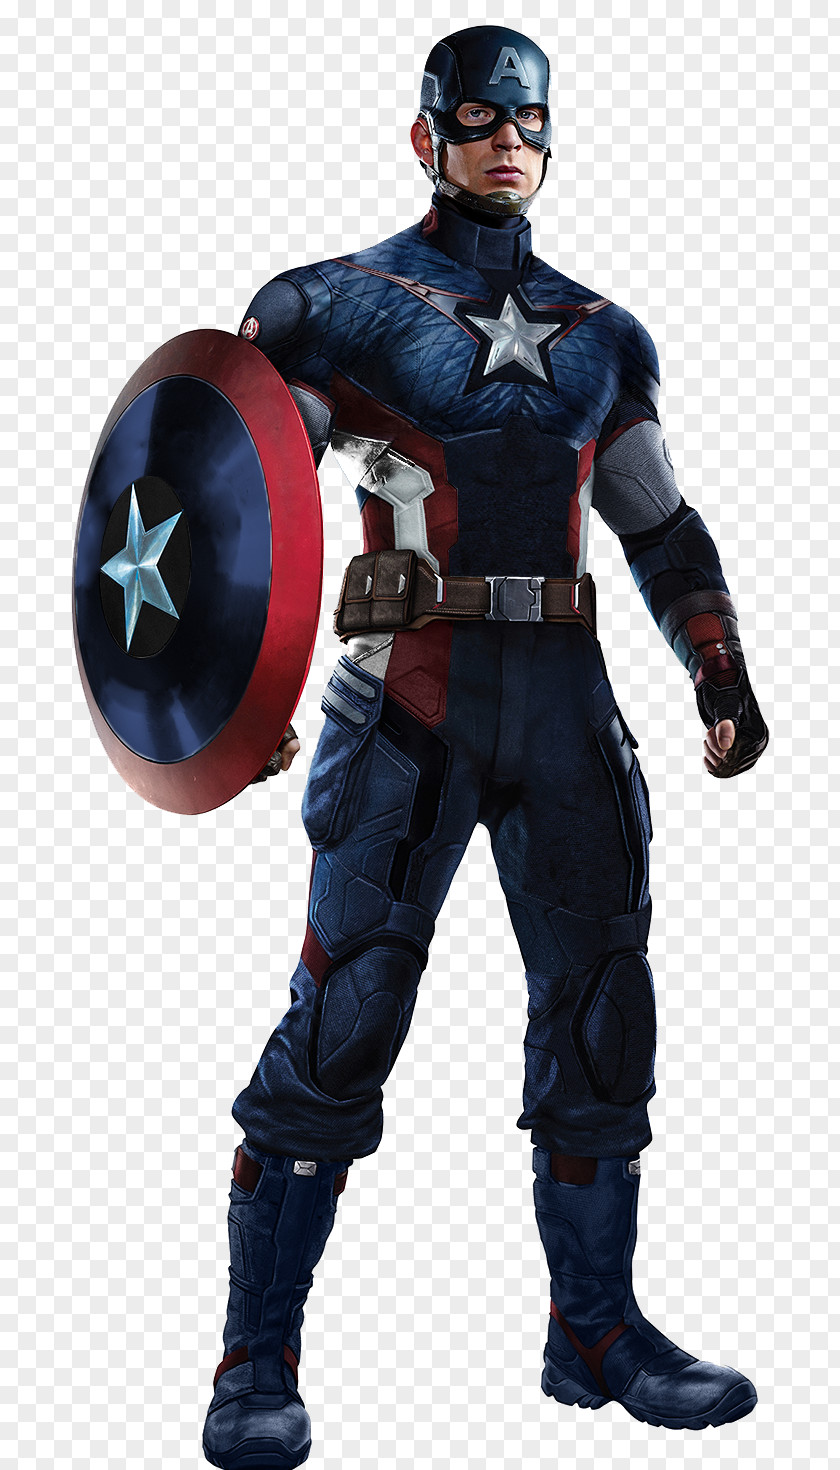 Body Captain America: The First Avenger Steve Englehart Marvel Cinematic Universe PNG